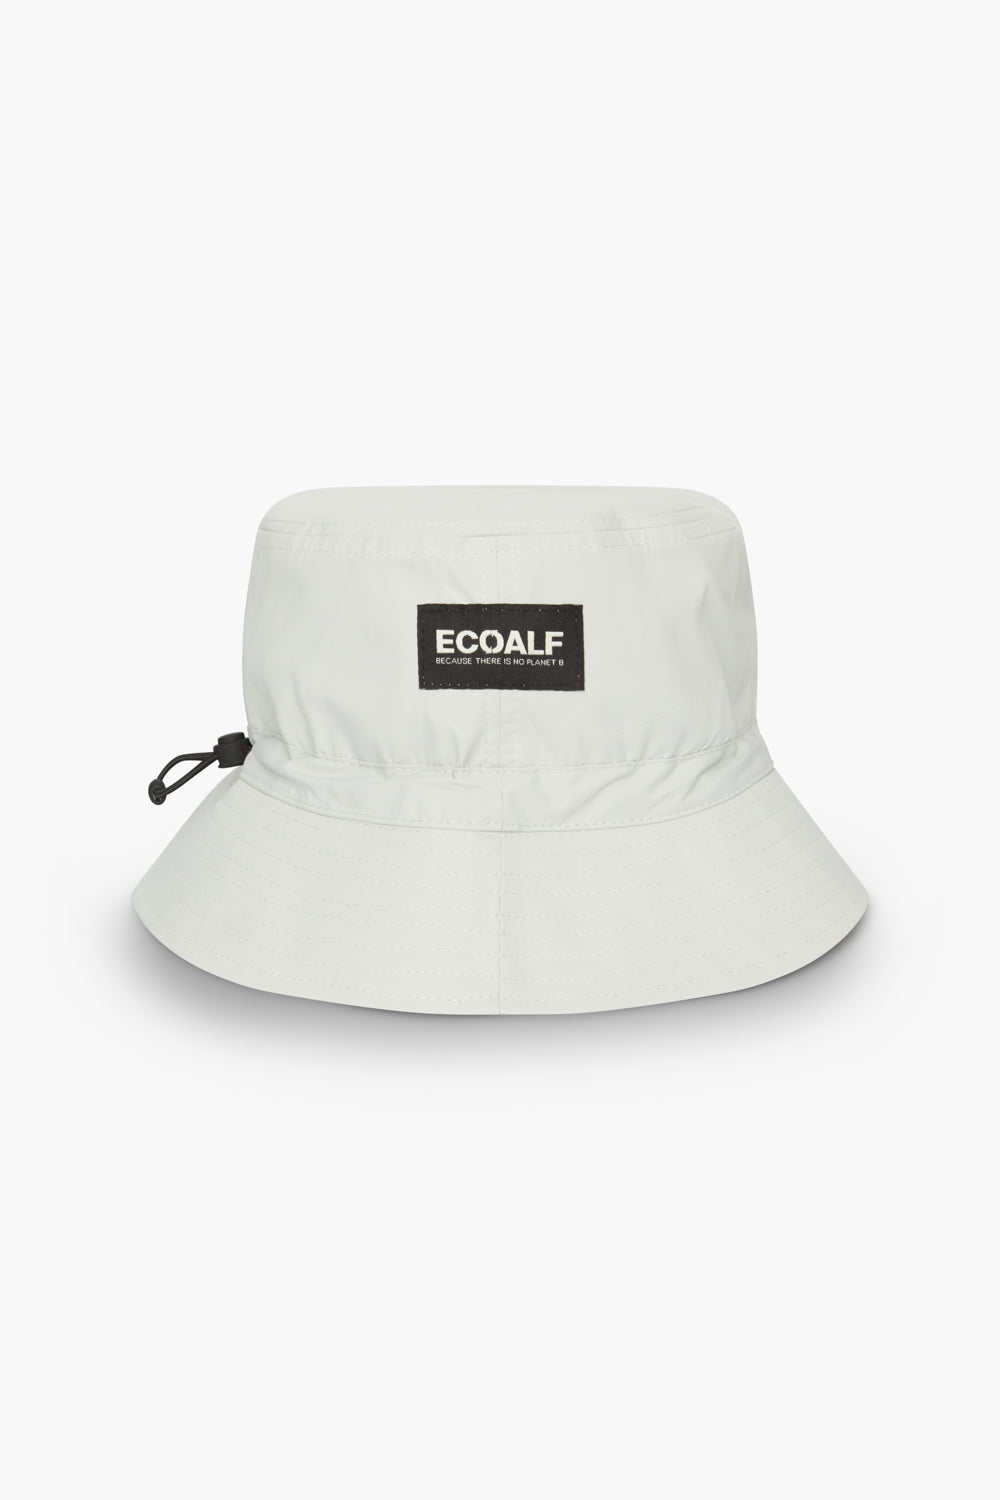 Ecoalf Waterproof BAS Bucket Hat Beige One Size